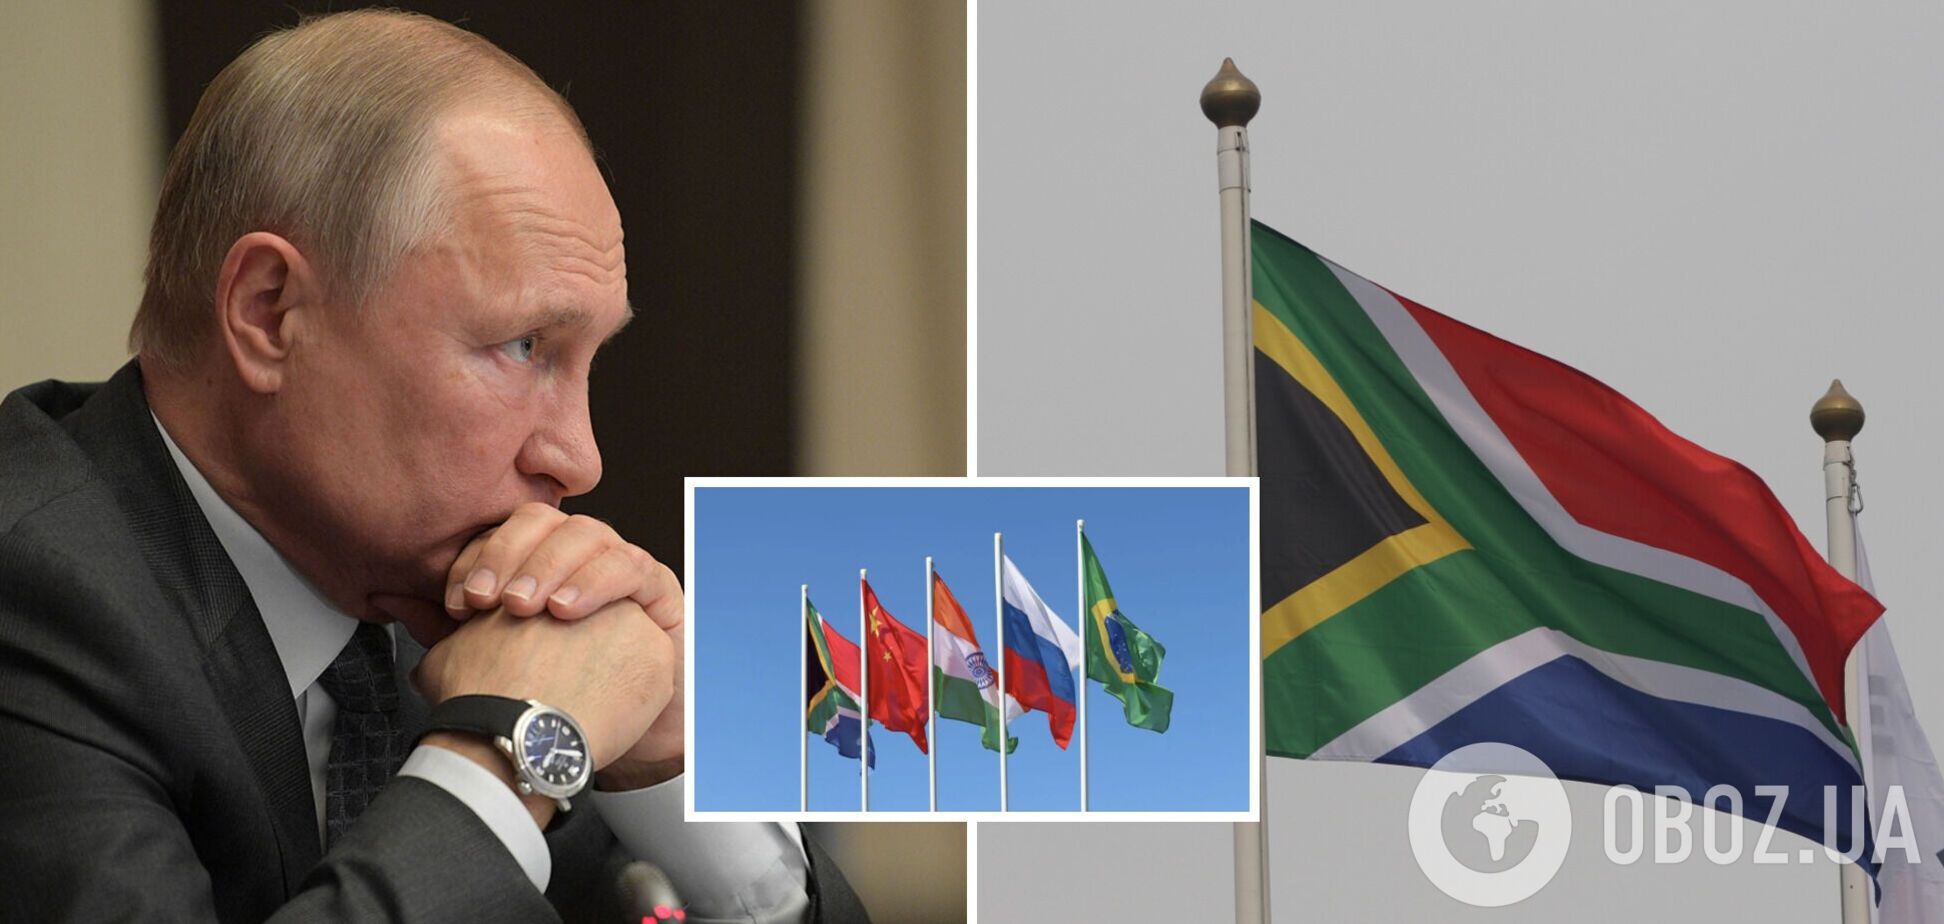 Чтобы Путин мог приехать на саммит БРИКС? Южная Африка собирается выйти из МУС